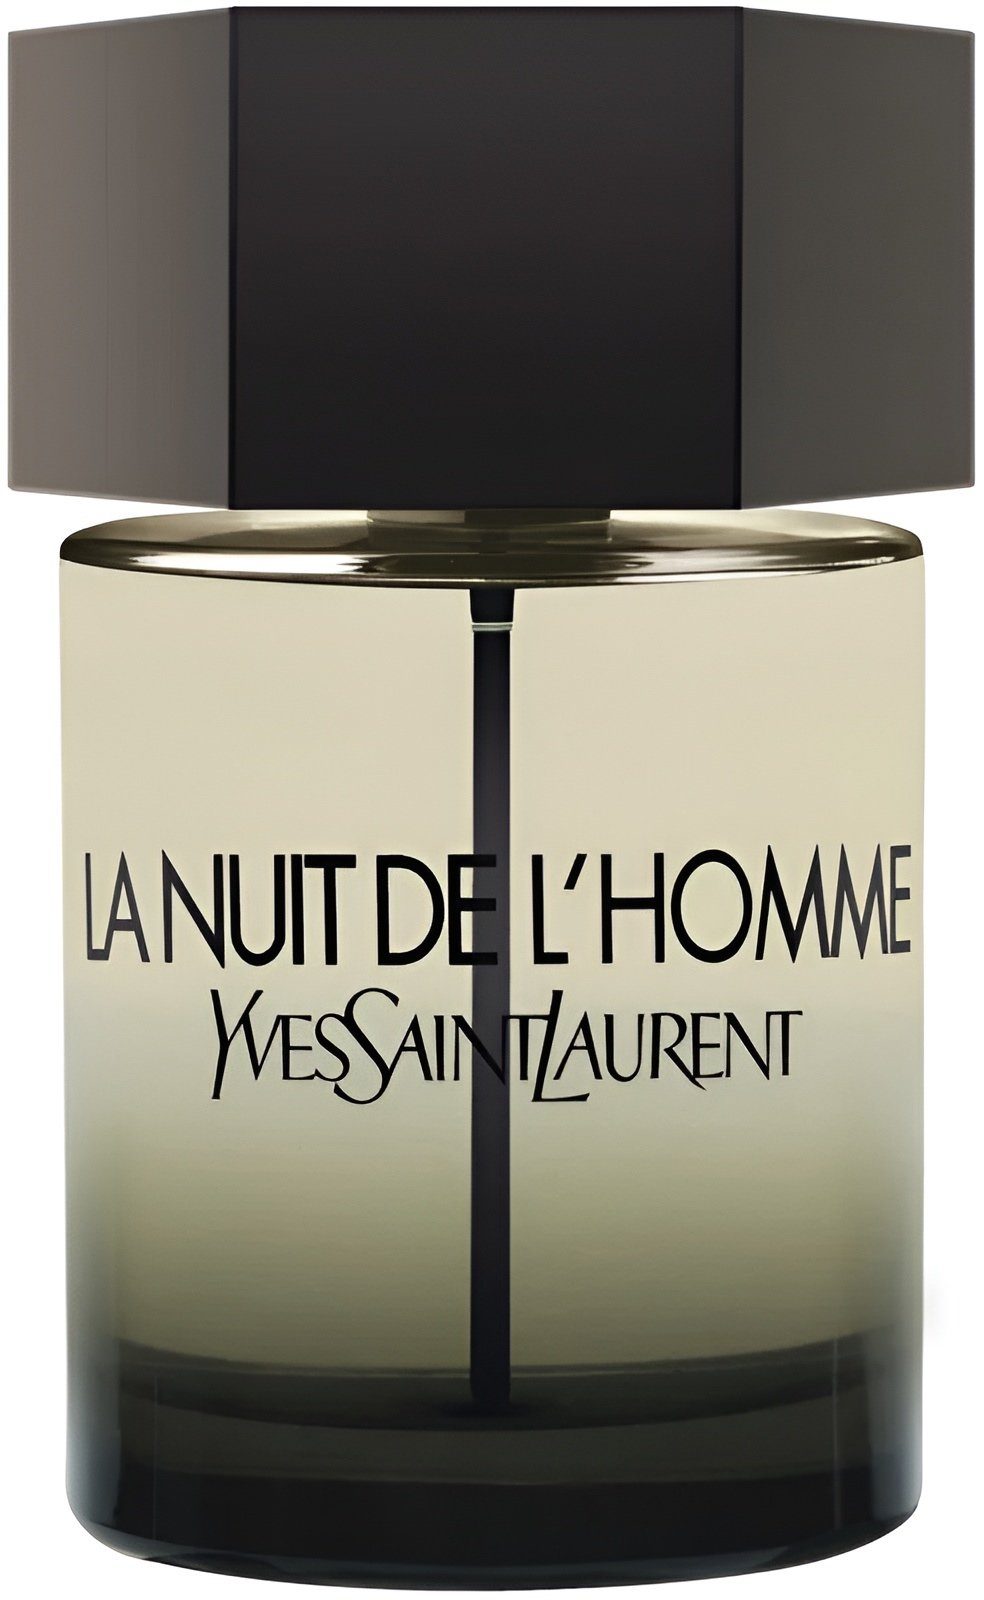 YVES SAINT LAURENT für Eau Saint Saint Männer Homme Eau Qualität de La Düft Parfum de de Yves Langanhaltend Toilette Yves Parfüm Nuit L Laurent Herren, Laurent Herren